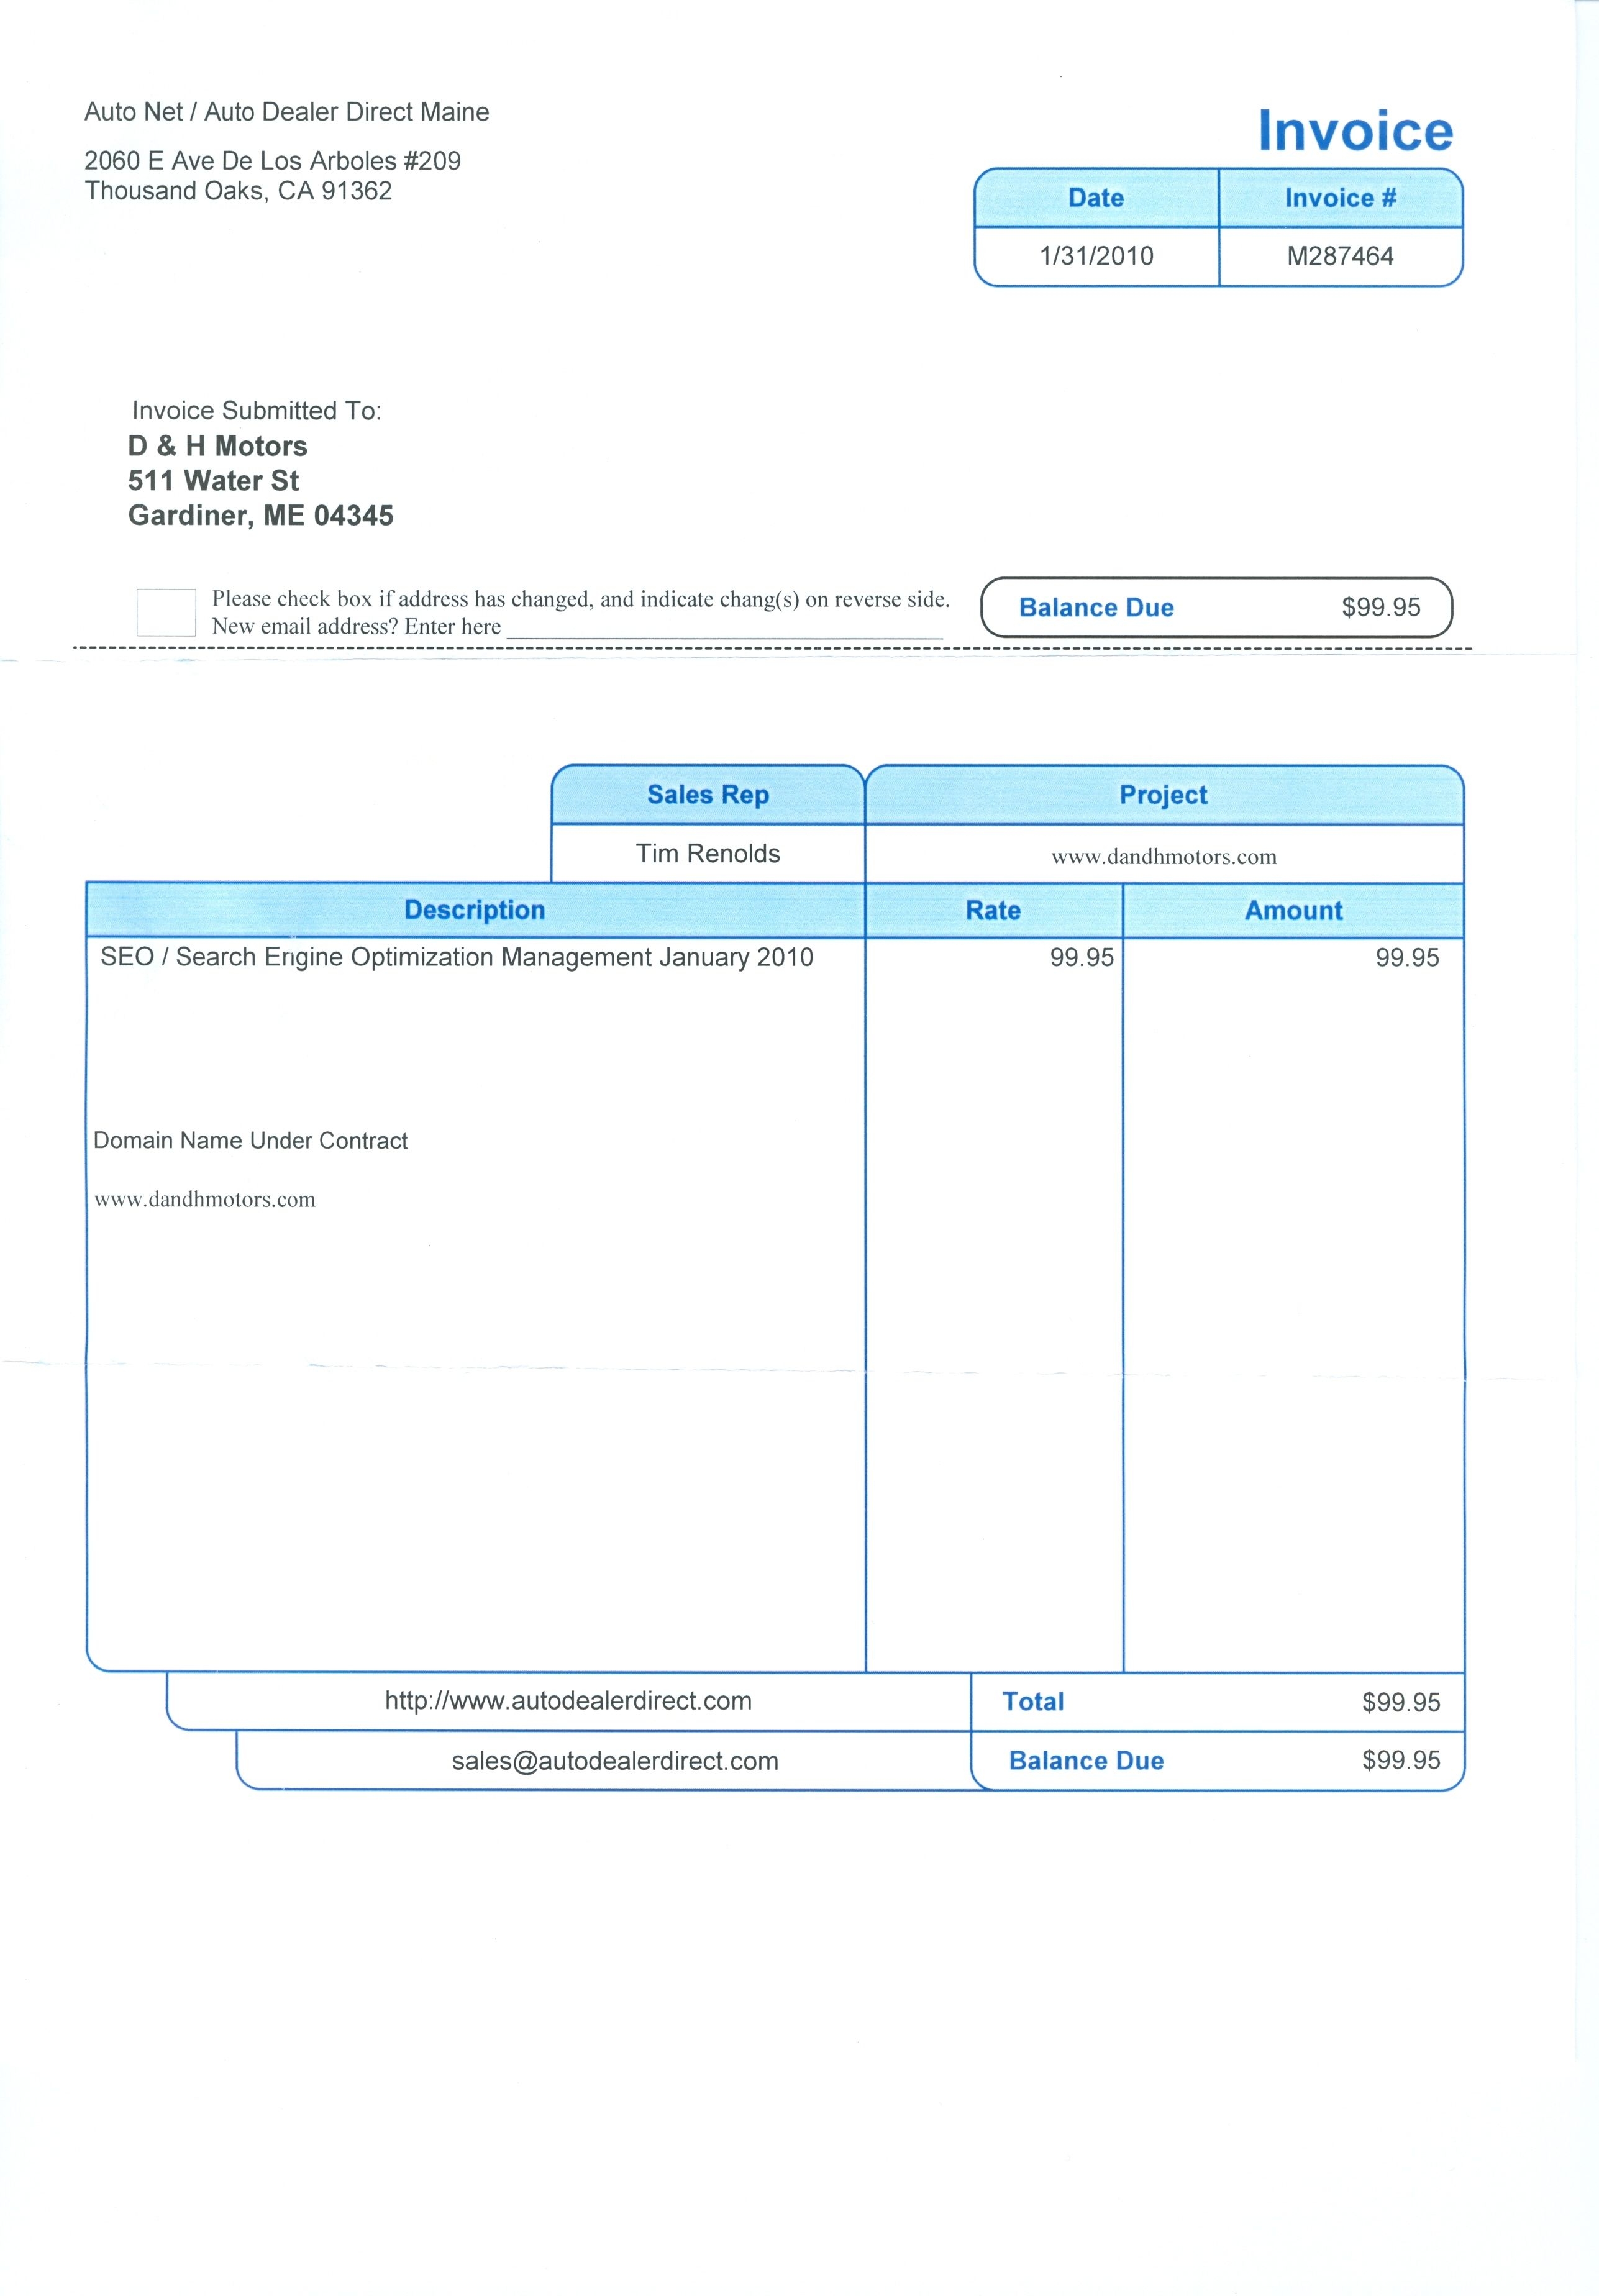 auto dealer invoice ripoff report auto netauto dealer direct invoice template of toyota